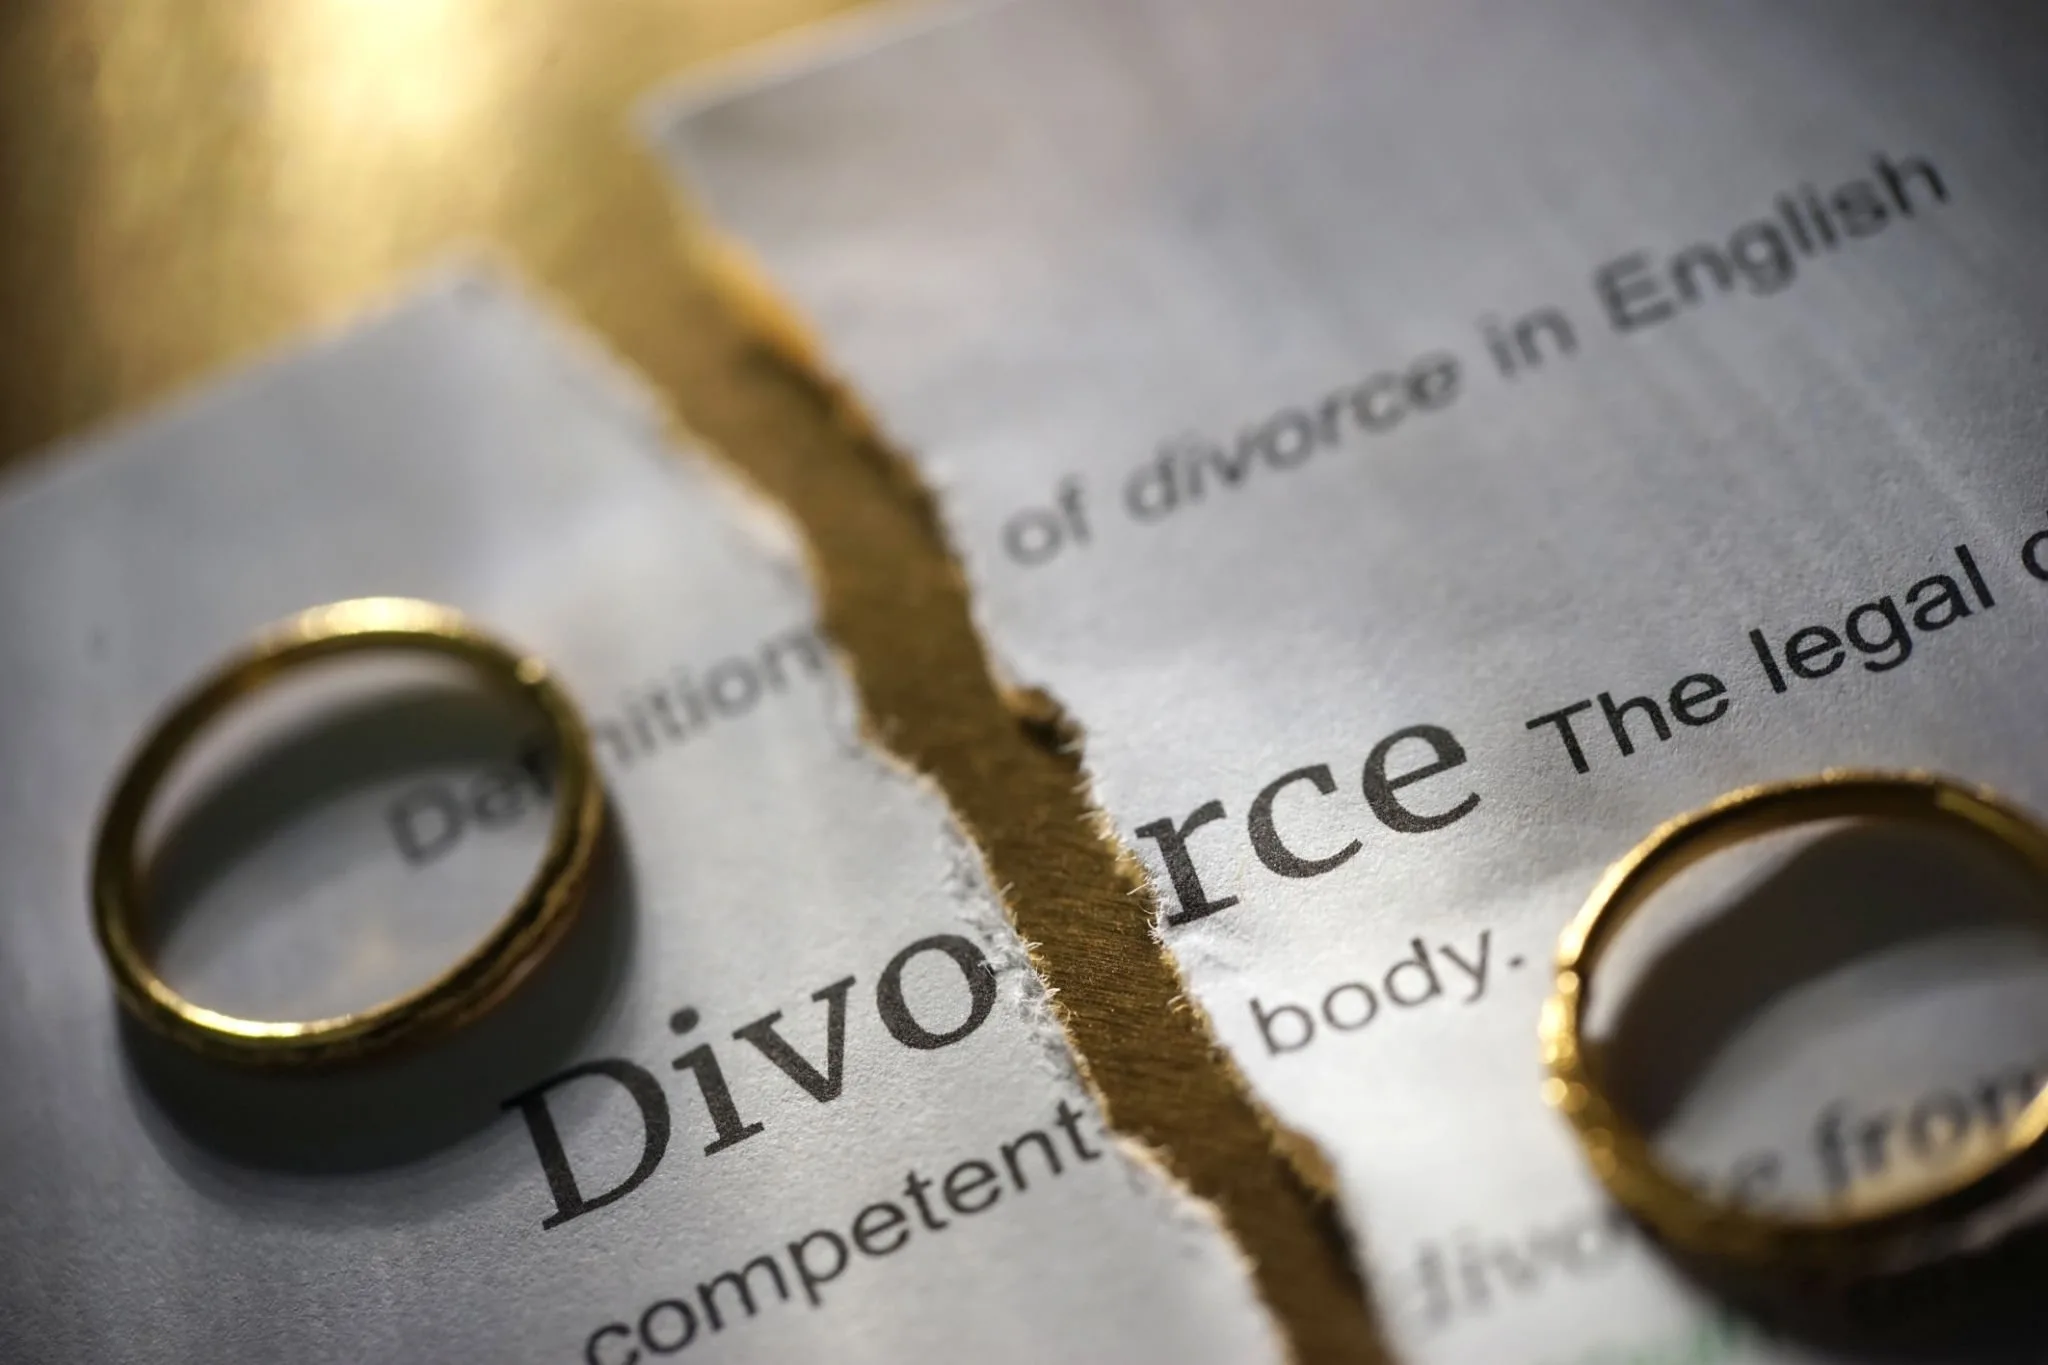 Best divorce lawyers in london